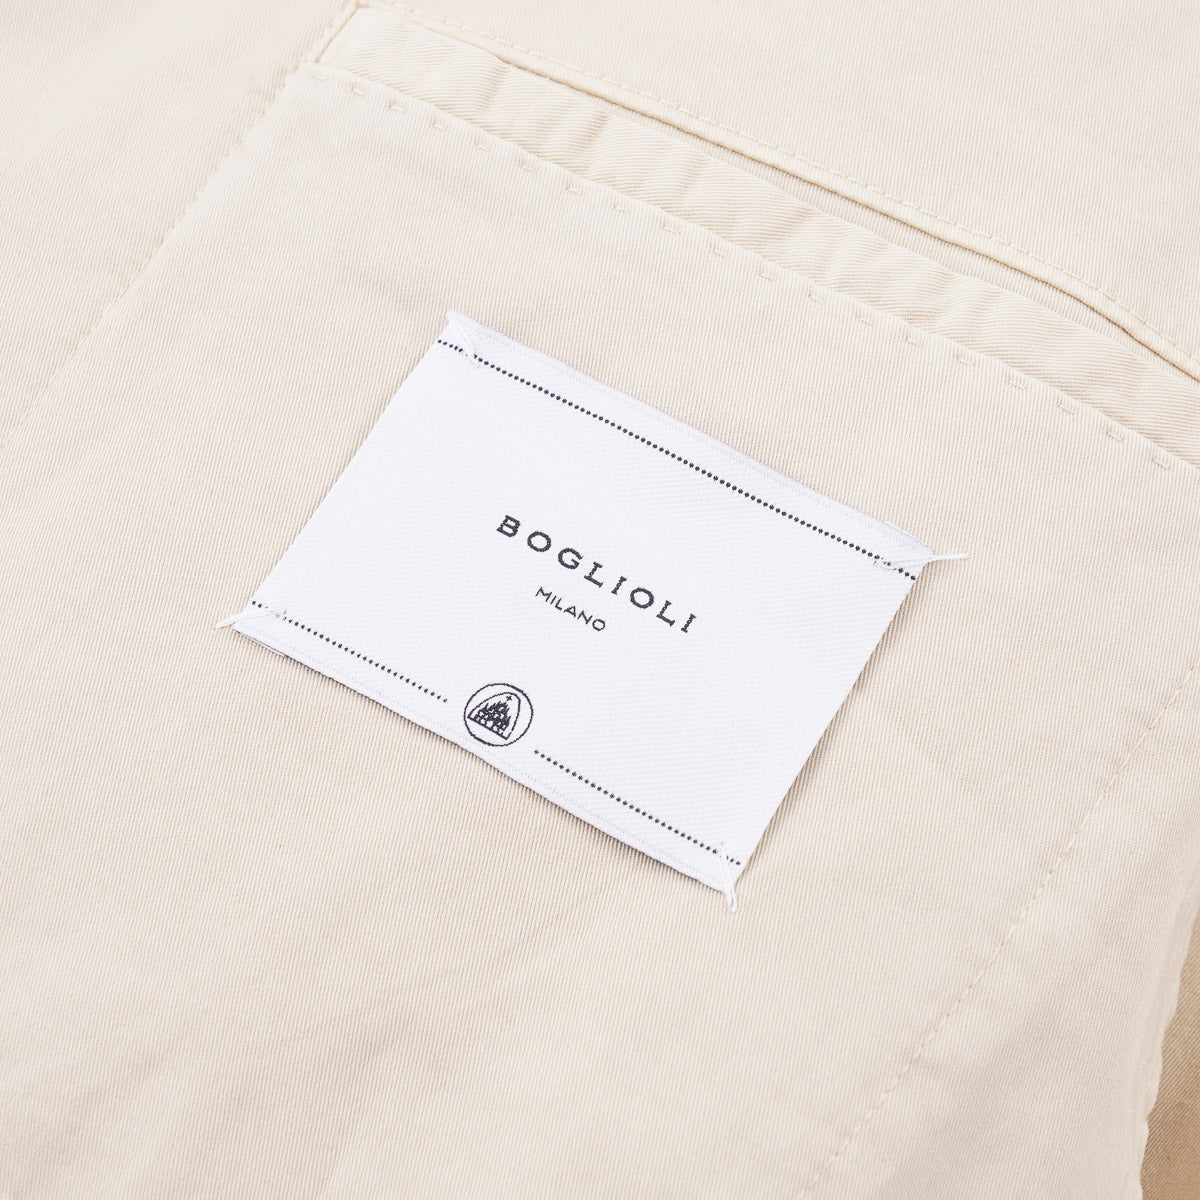 Boglioli Tan Cotton 'K Jacket' Suit - Top Shelf Apparel